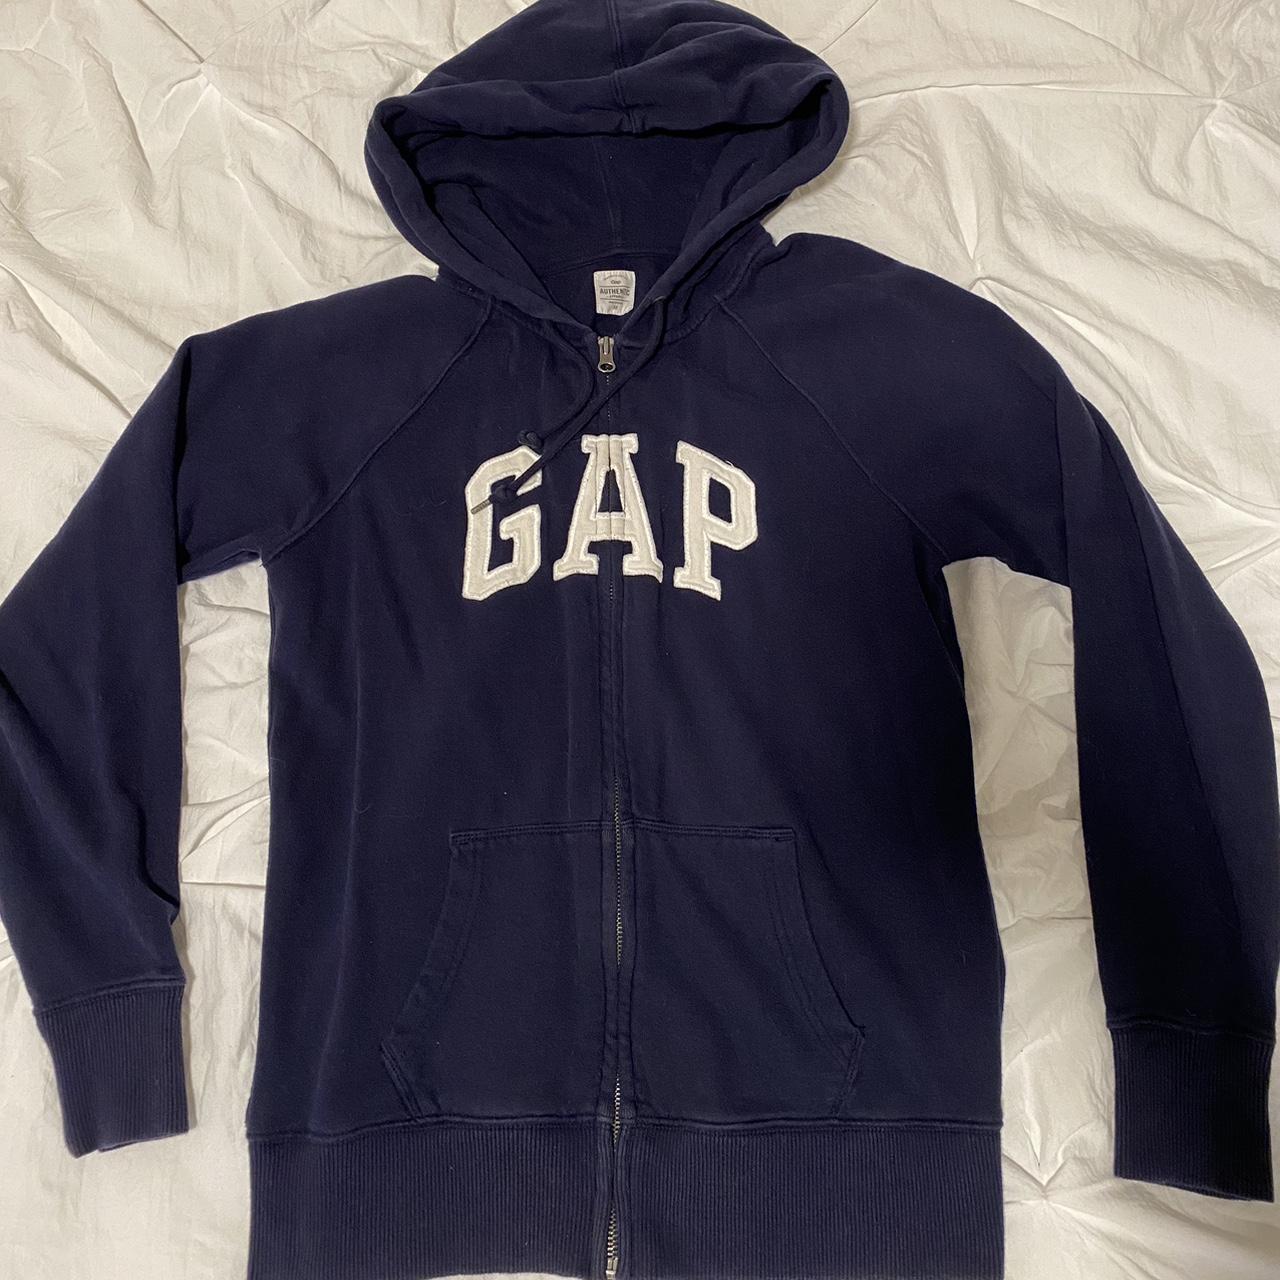 Vintage Gap Zip-up😍 #gap #zipuphoodie #gapzipup... - Depop